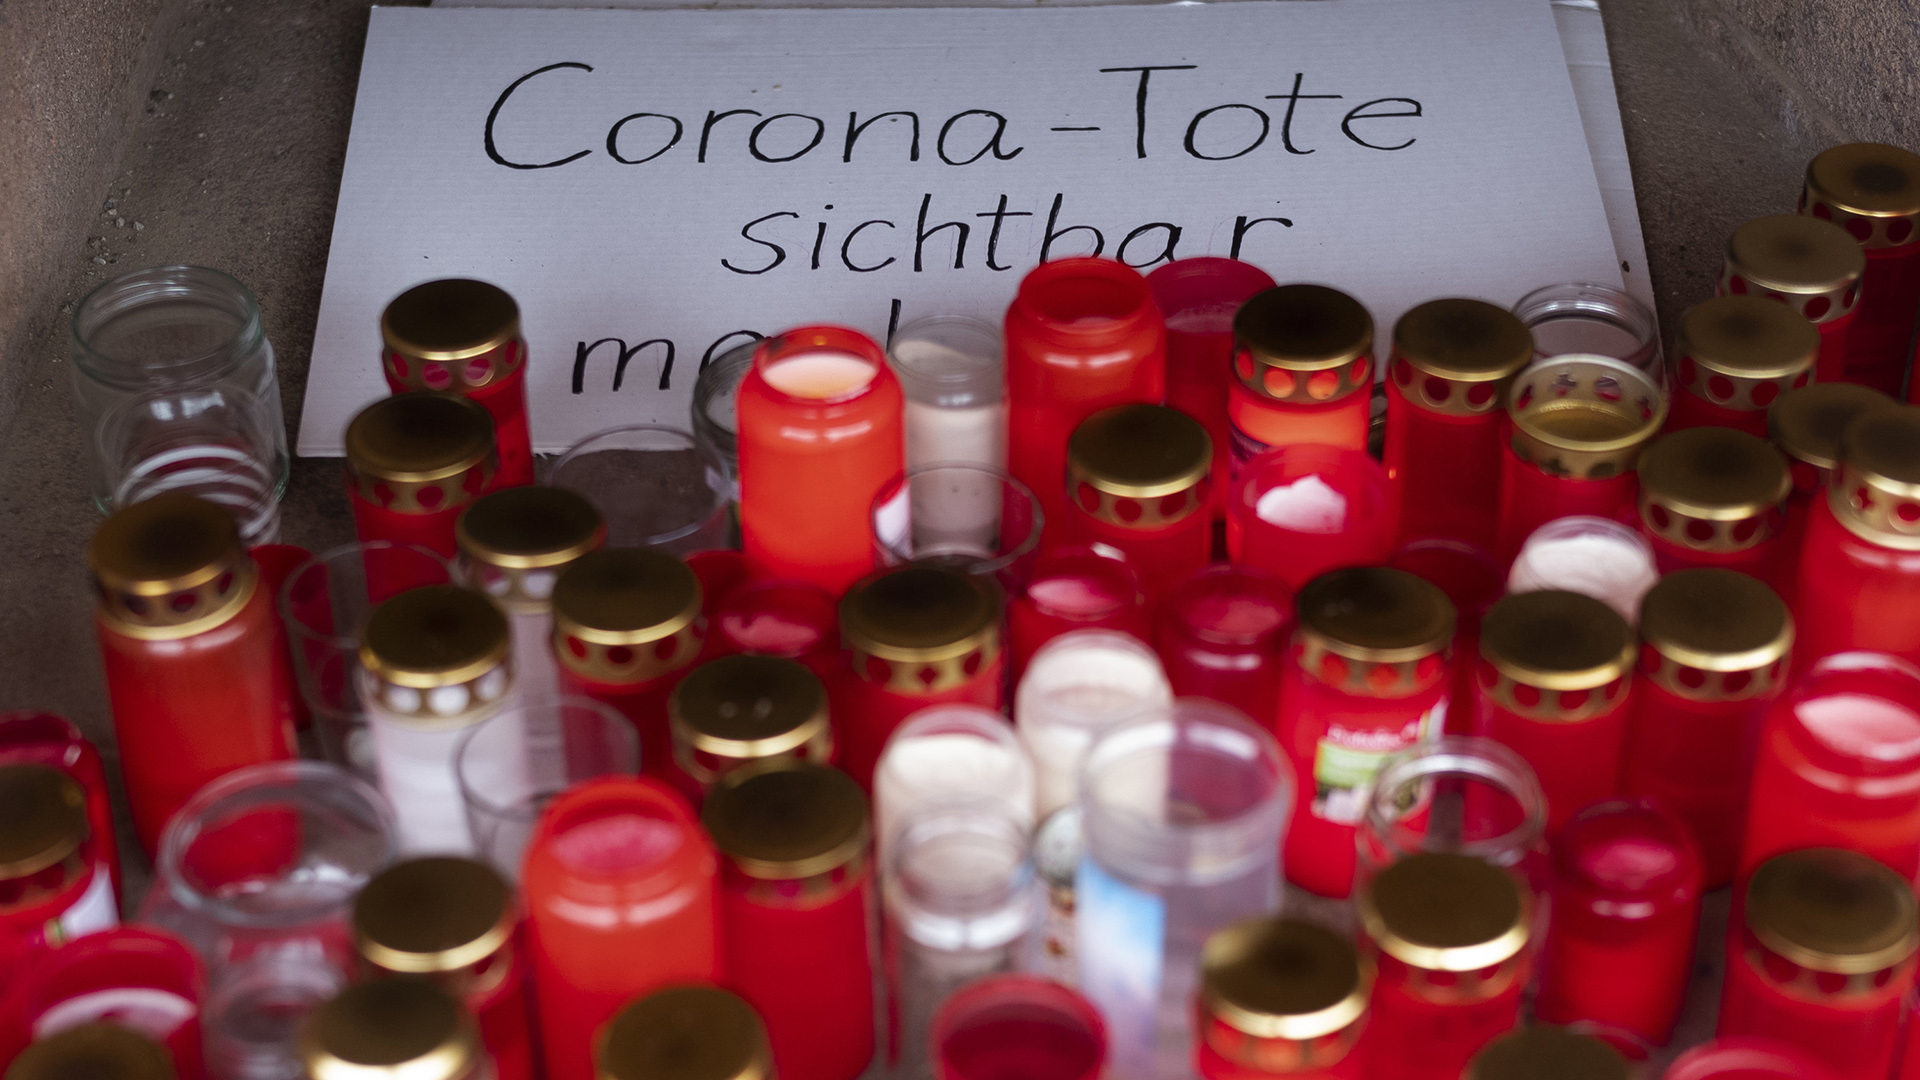  Zahlreiche brennende Grablichter stehen zum Gedenken an Corona-Tote an einem Gedenkort. | AP